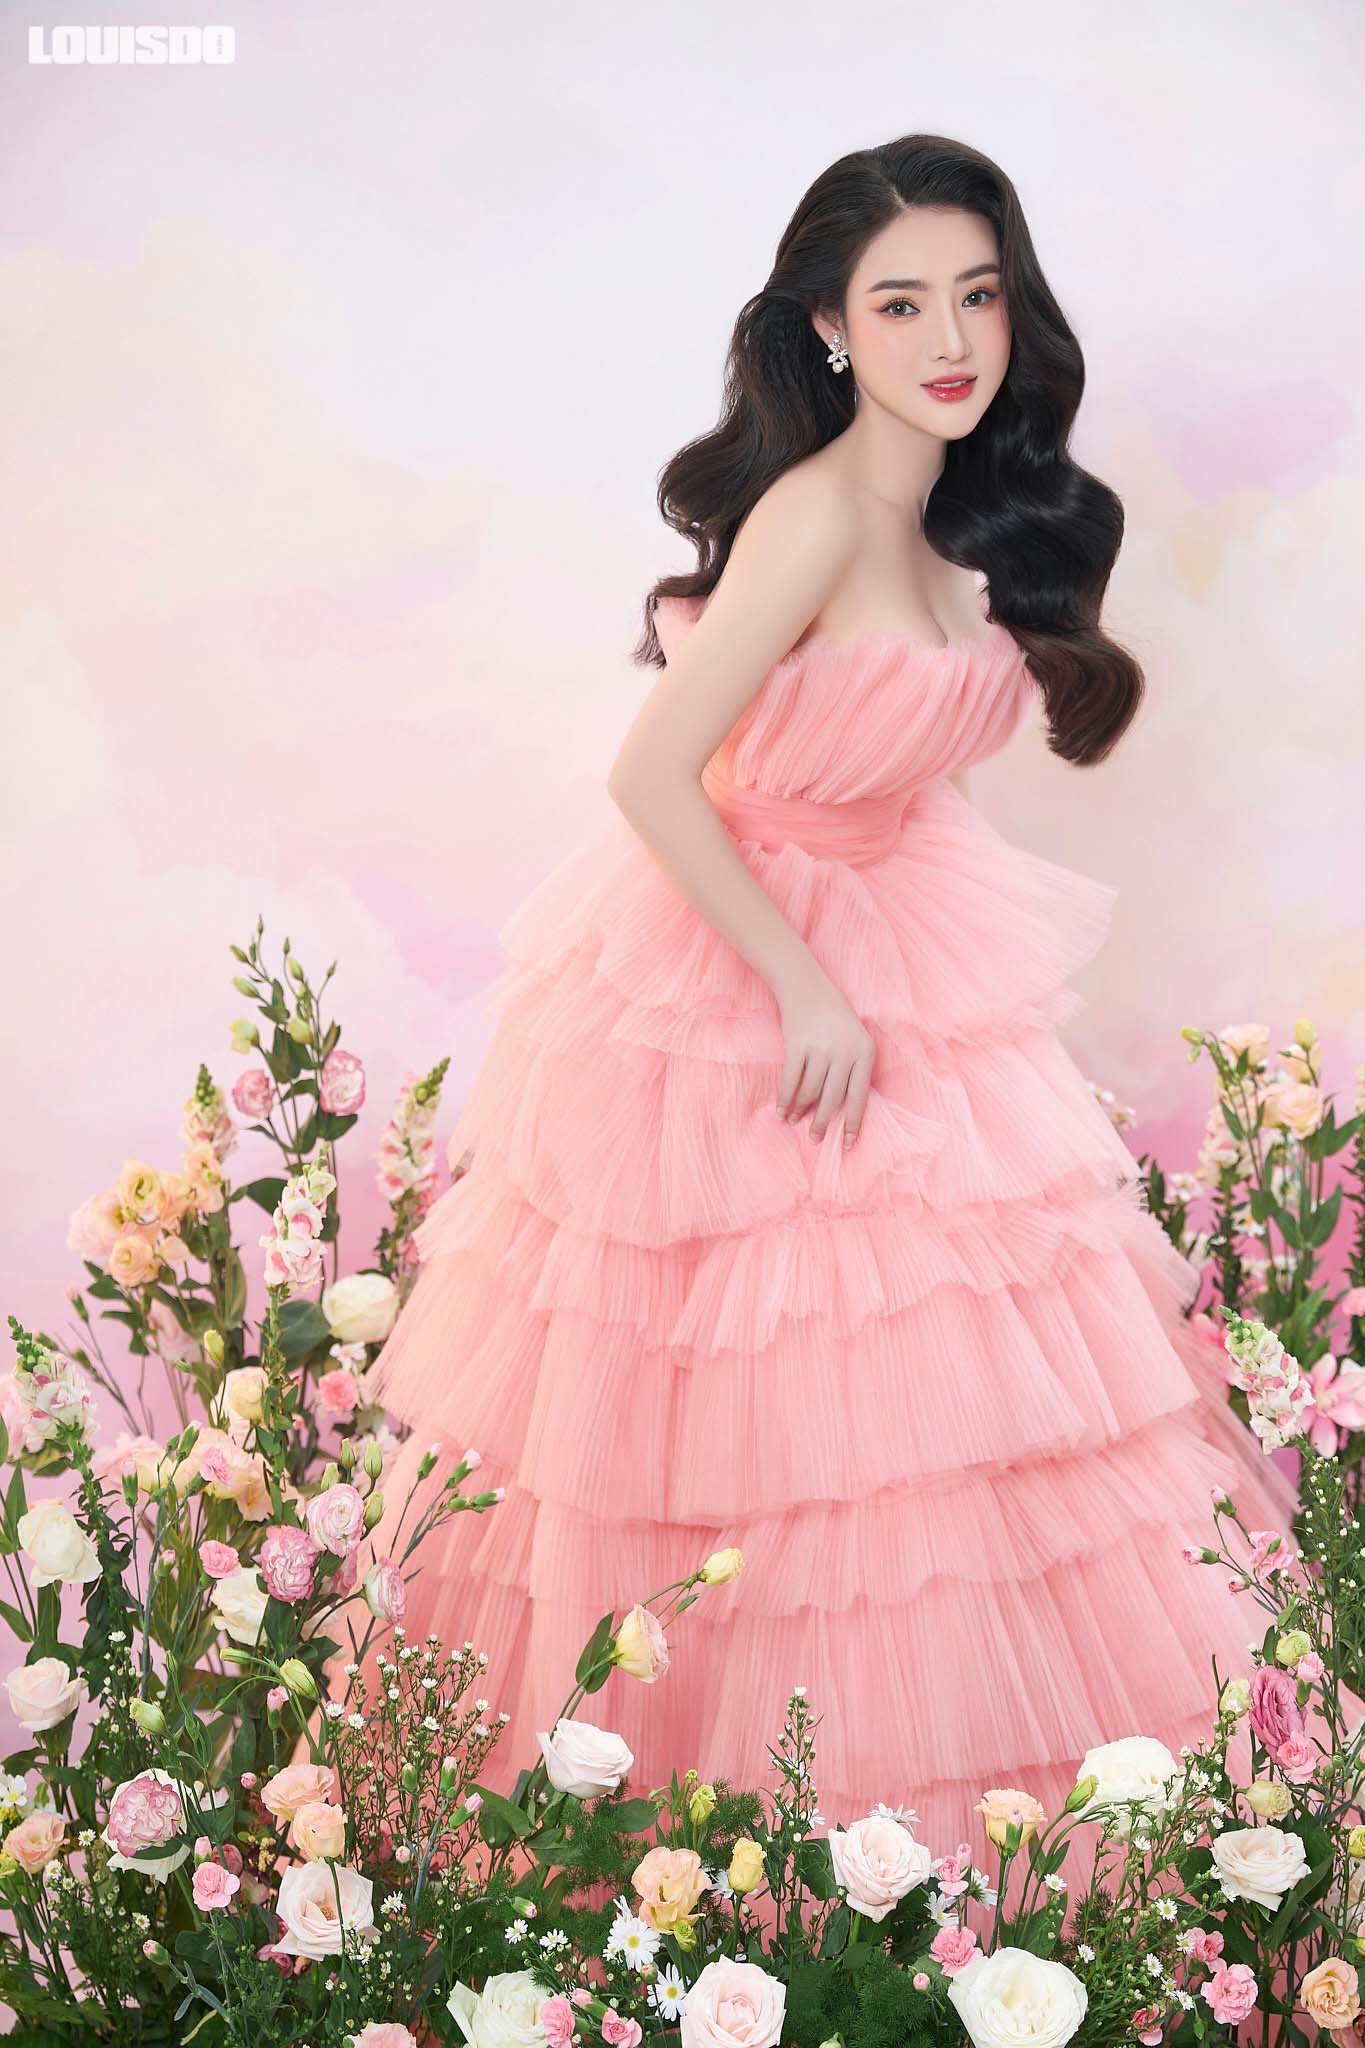 𝐇𝐔𝐌𝐌𝐘 𝐃𝐑𝐄𝐒𝐒 Vây công chúa, dáng babydoll cực ngọt ngào và bay  bổng. Hoạ tiết hoa hồng c�... | Instagram